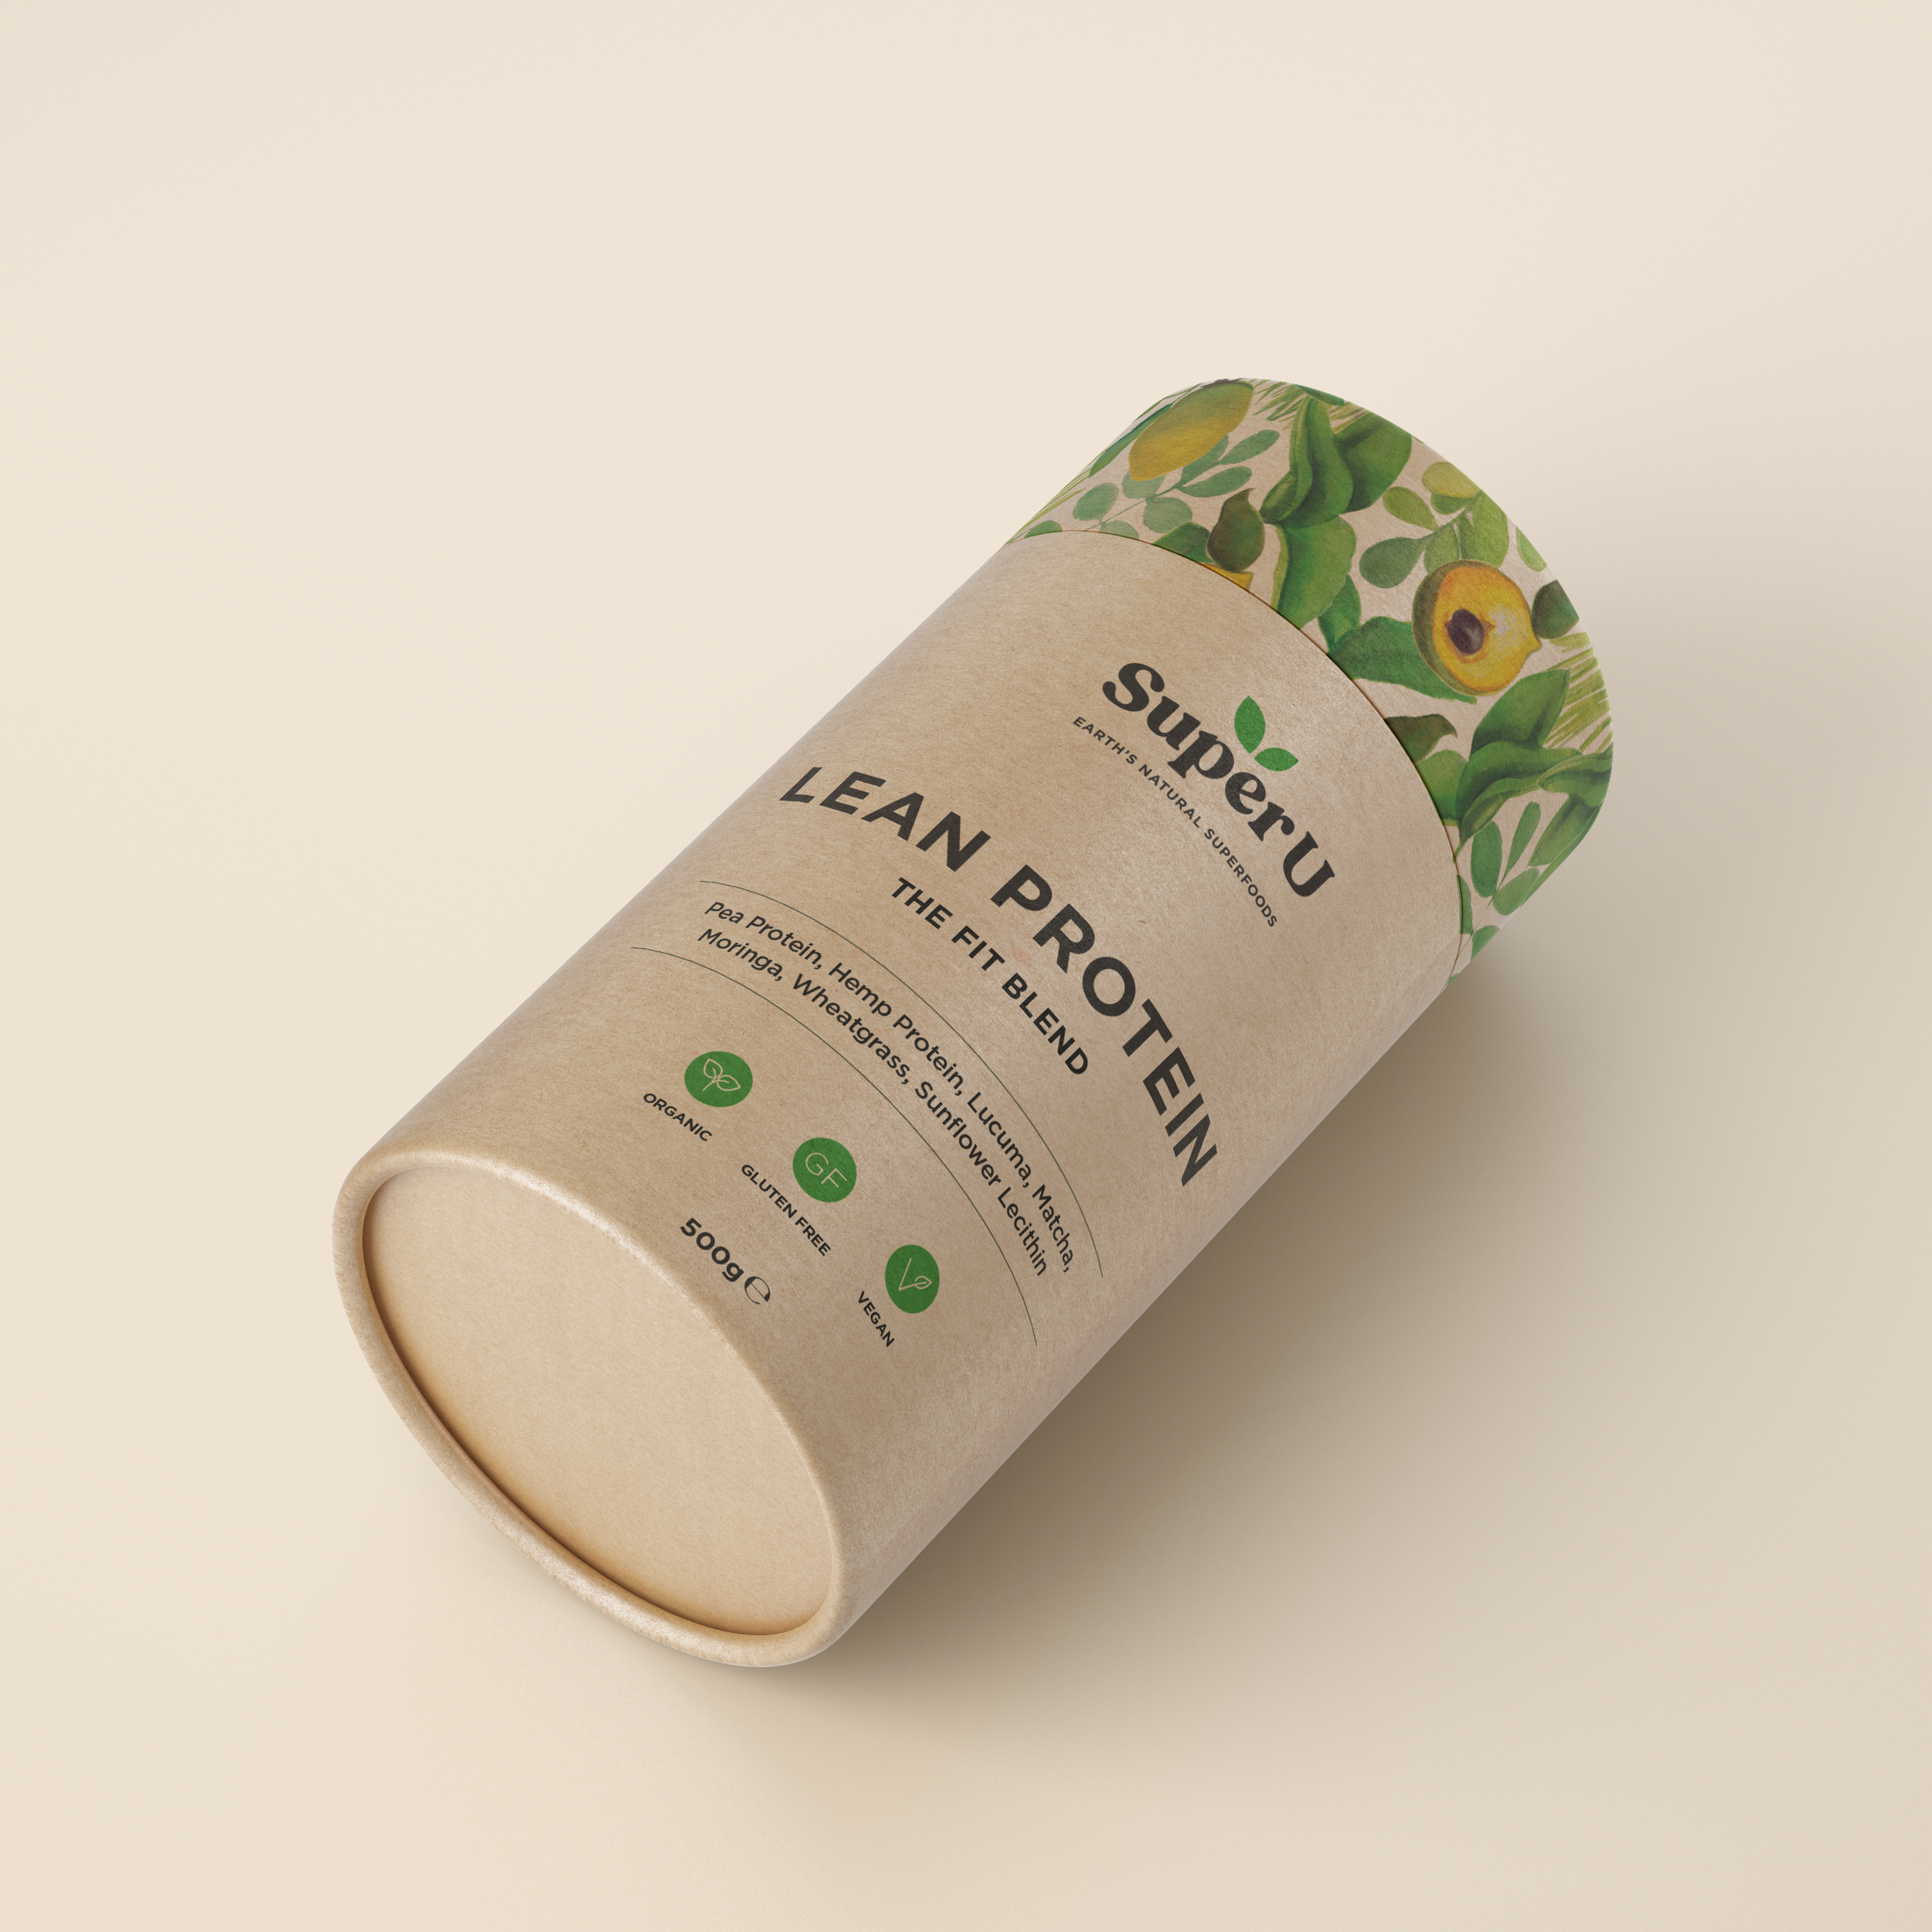 Freelance-graphic-designer-A beige round tube box of Super U lean protein powder